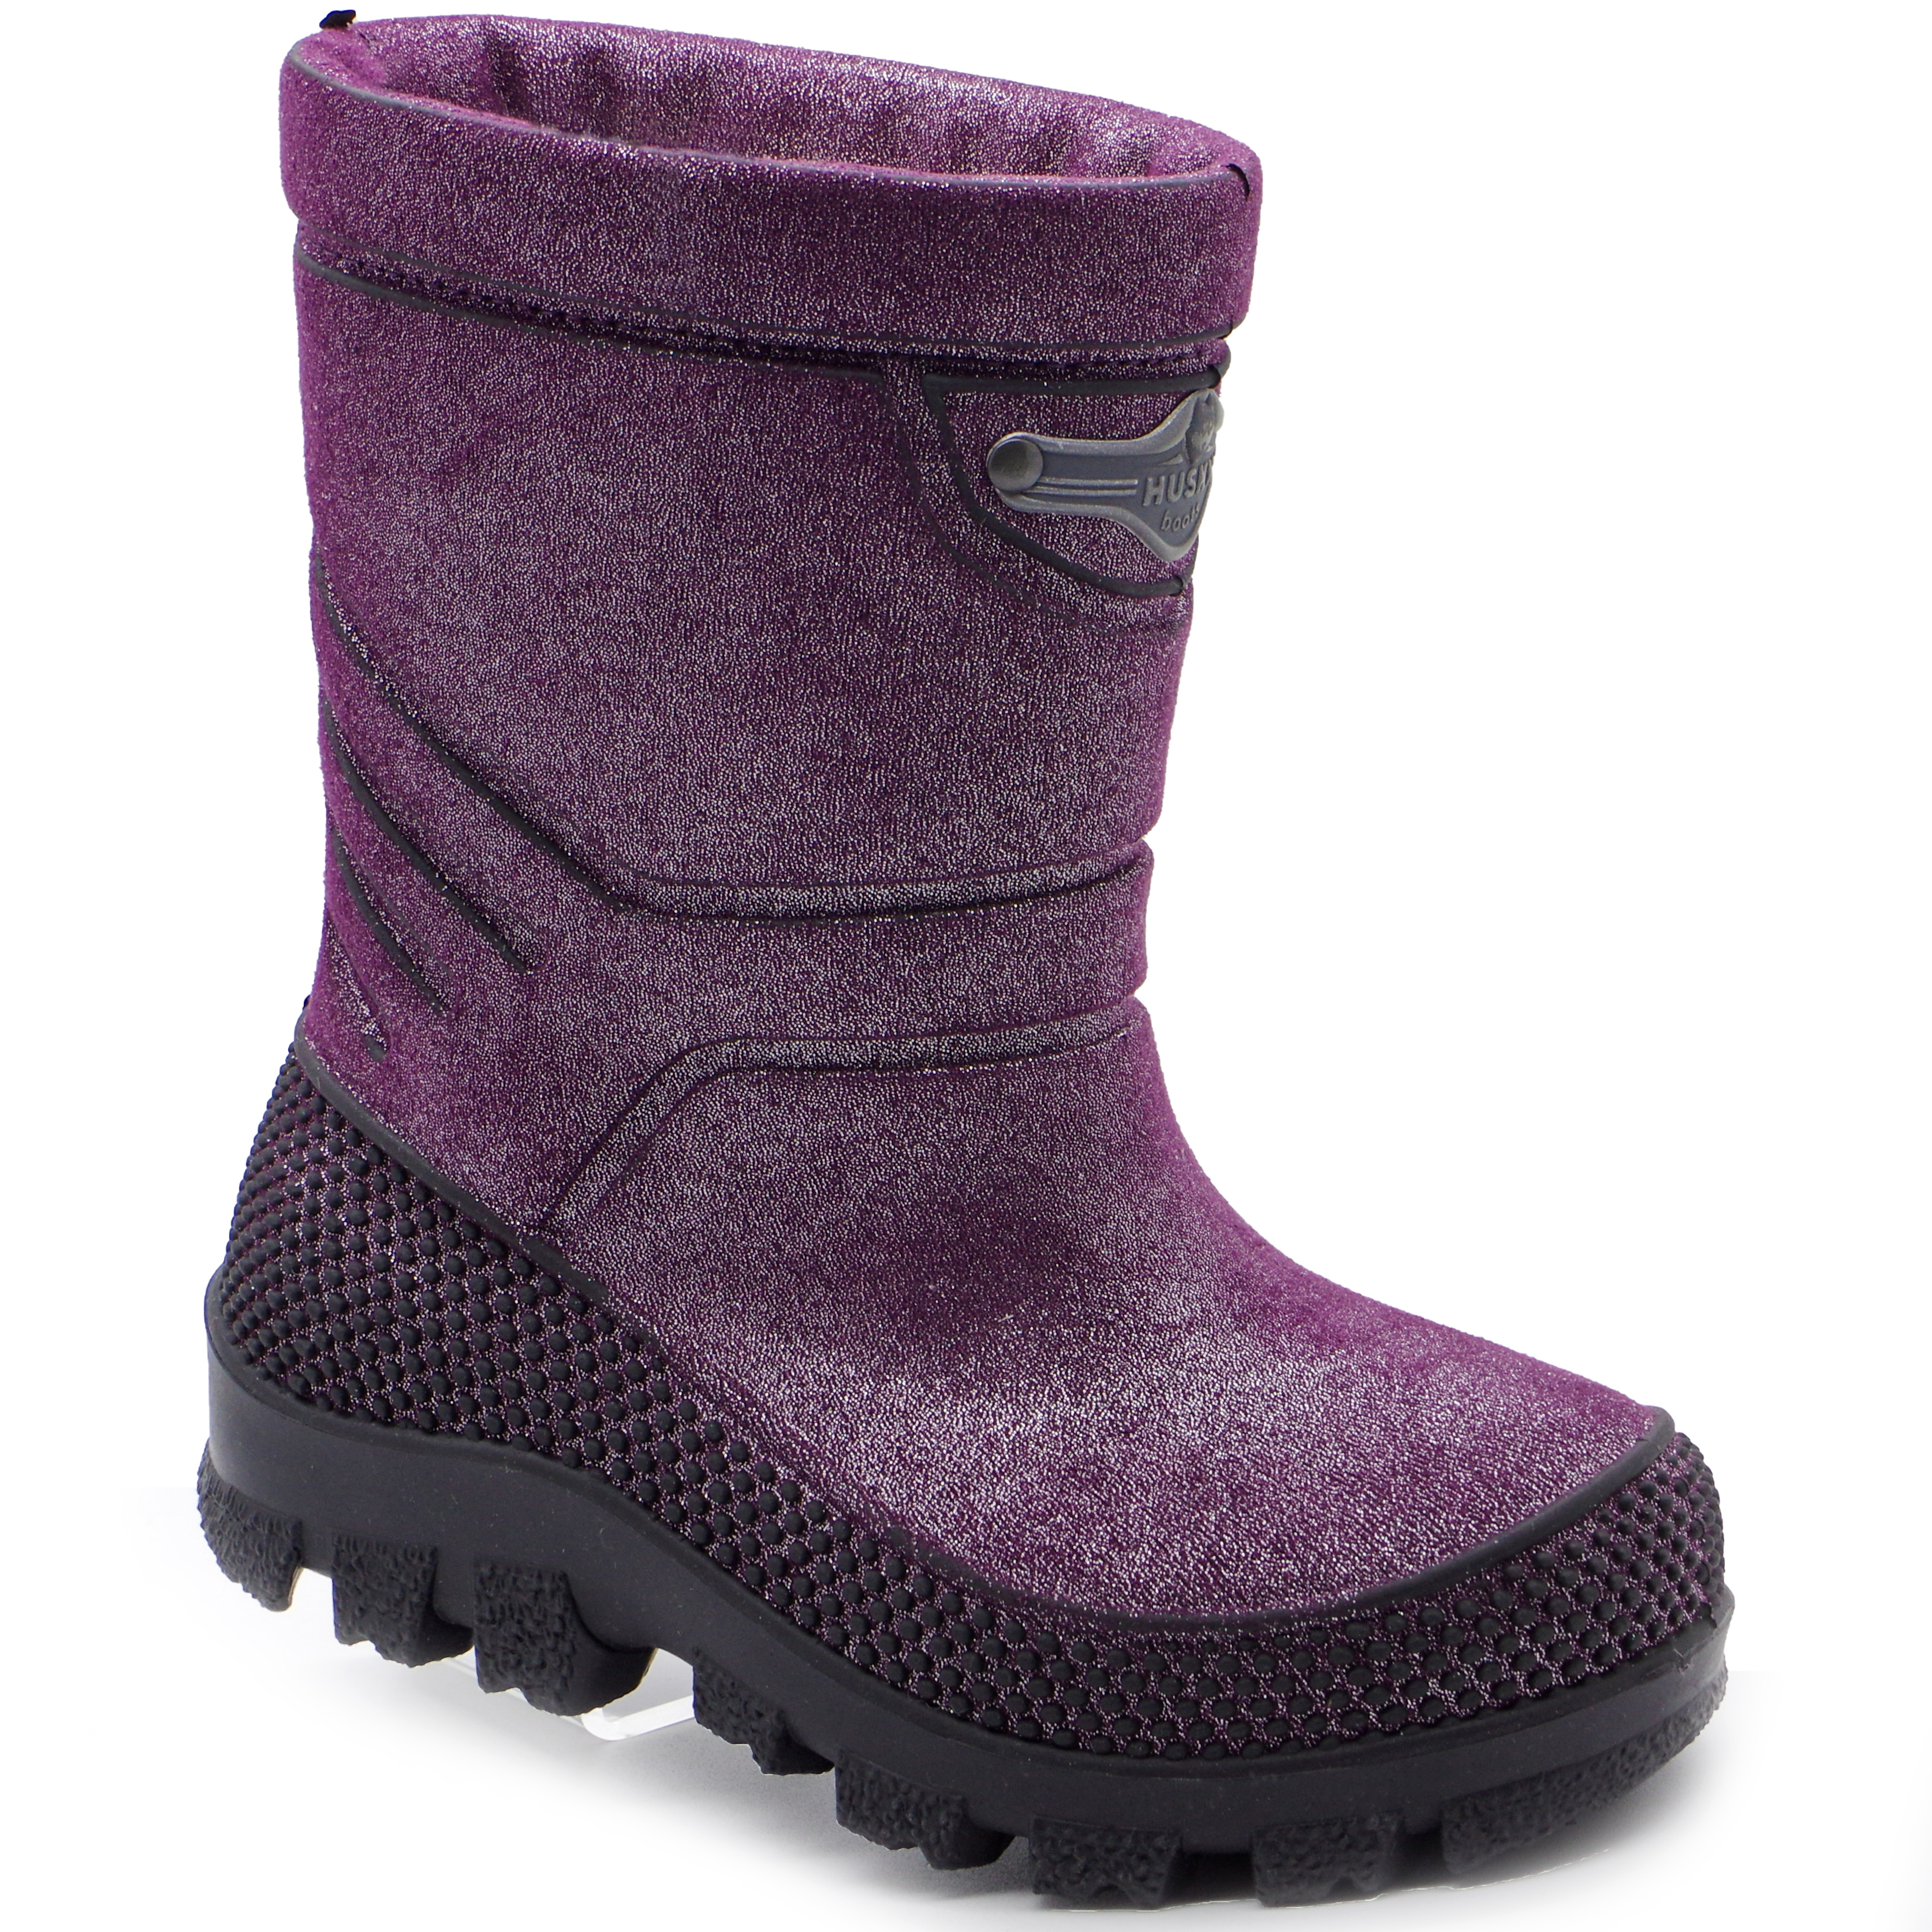 Husky Зимові чоботи (2251) для дівчинки, матеріал SEBS, Бордо колір, 27-36 розміри